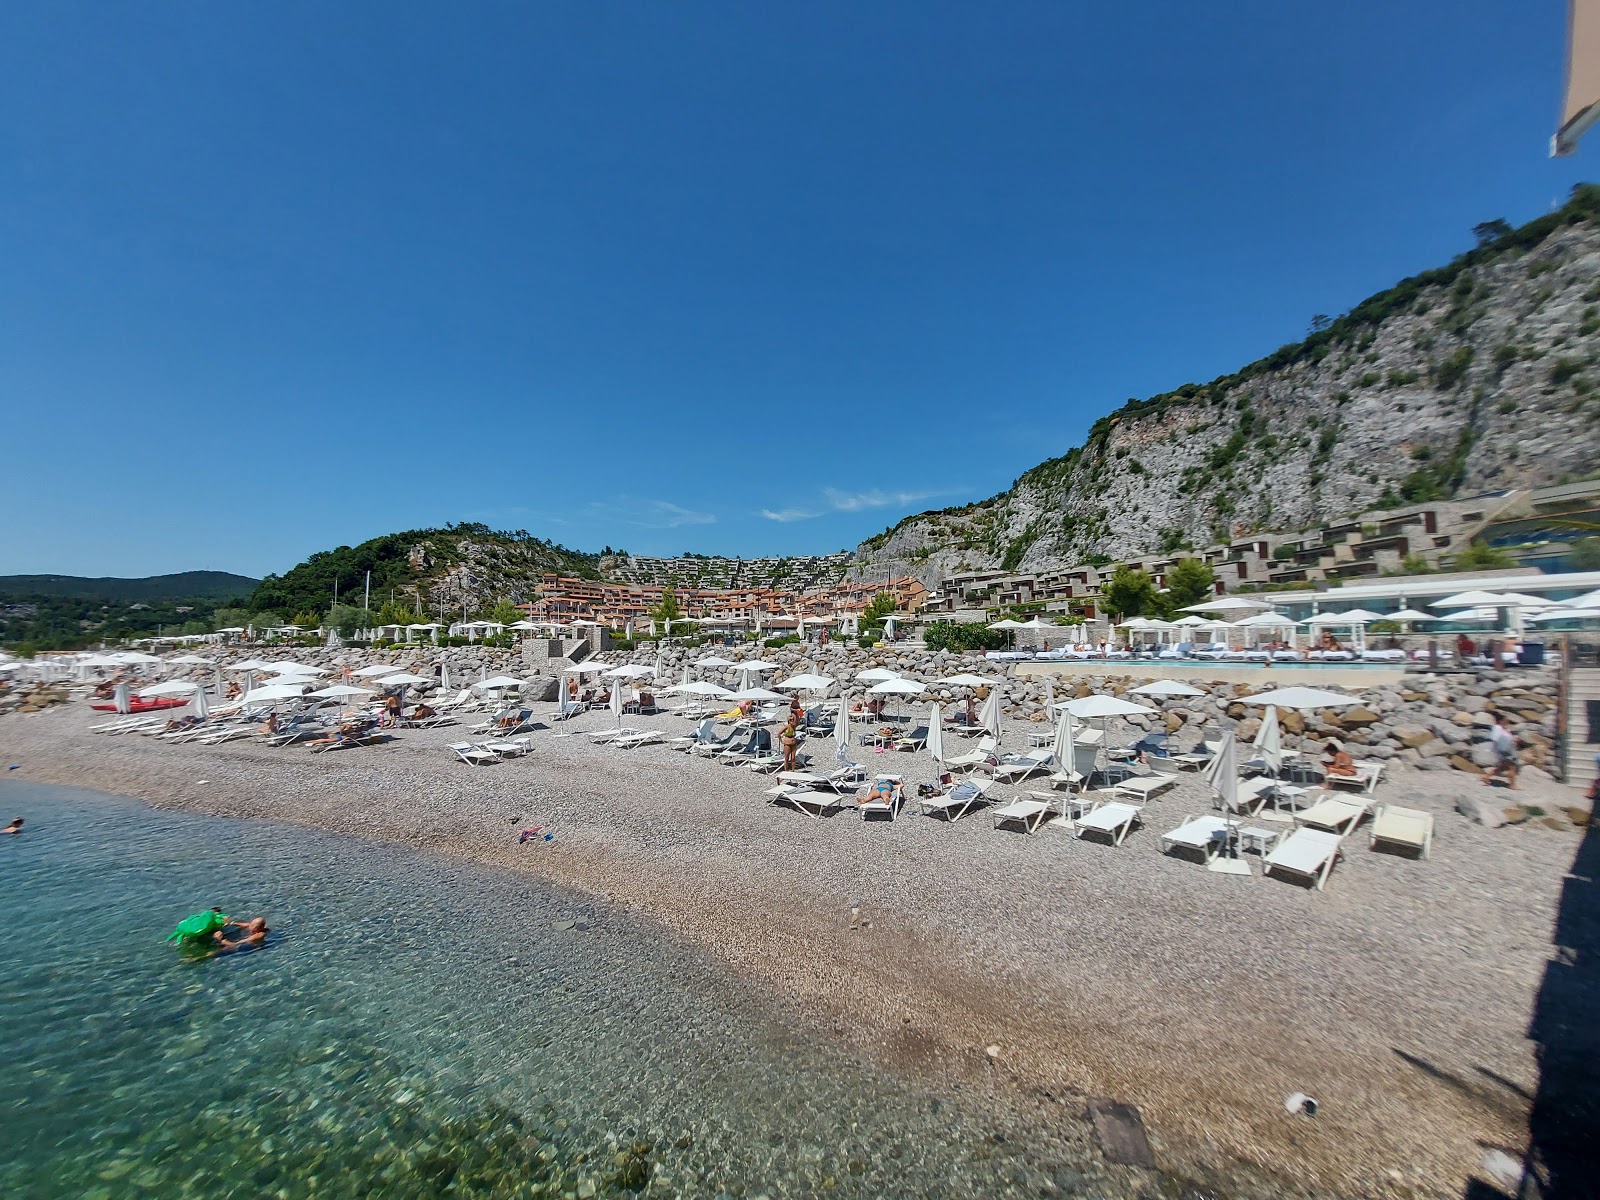 Foto de Spiaggia di Portopiccolo Sistiana - lugar popular entre los conocedores del relax